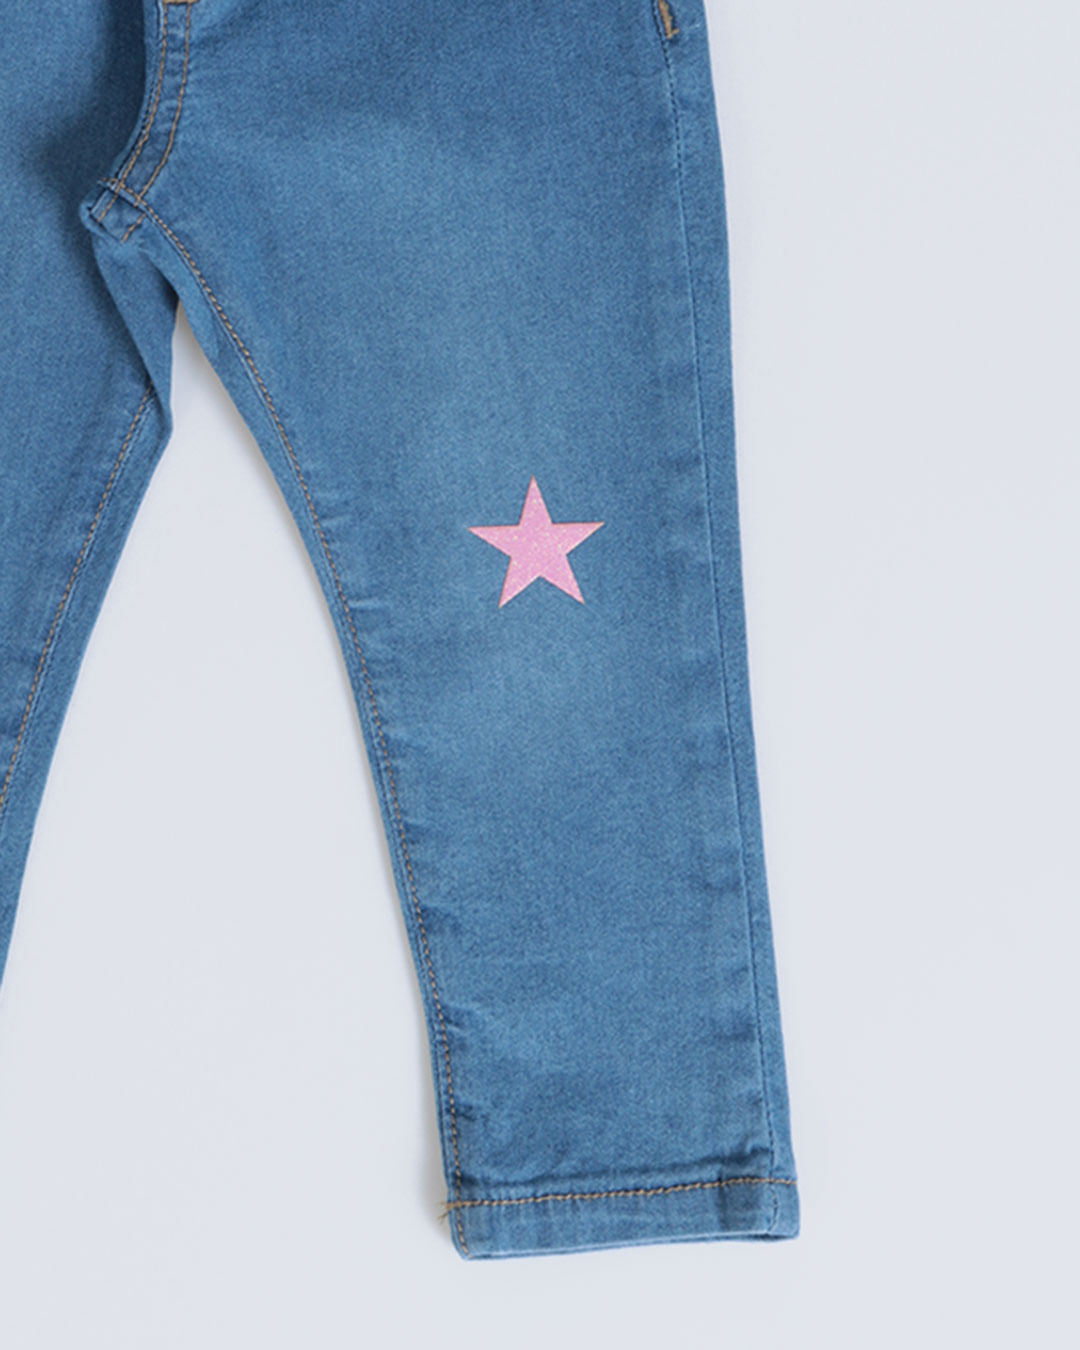 Calca-Jeans-Bebe-Estampa-Estrela-Azul-Claro